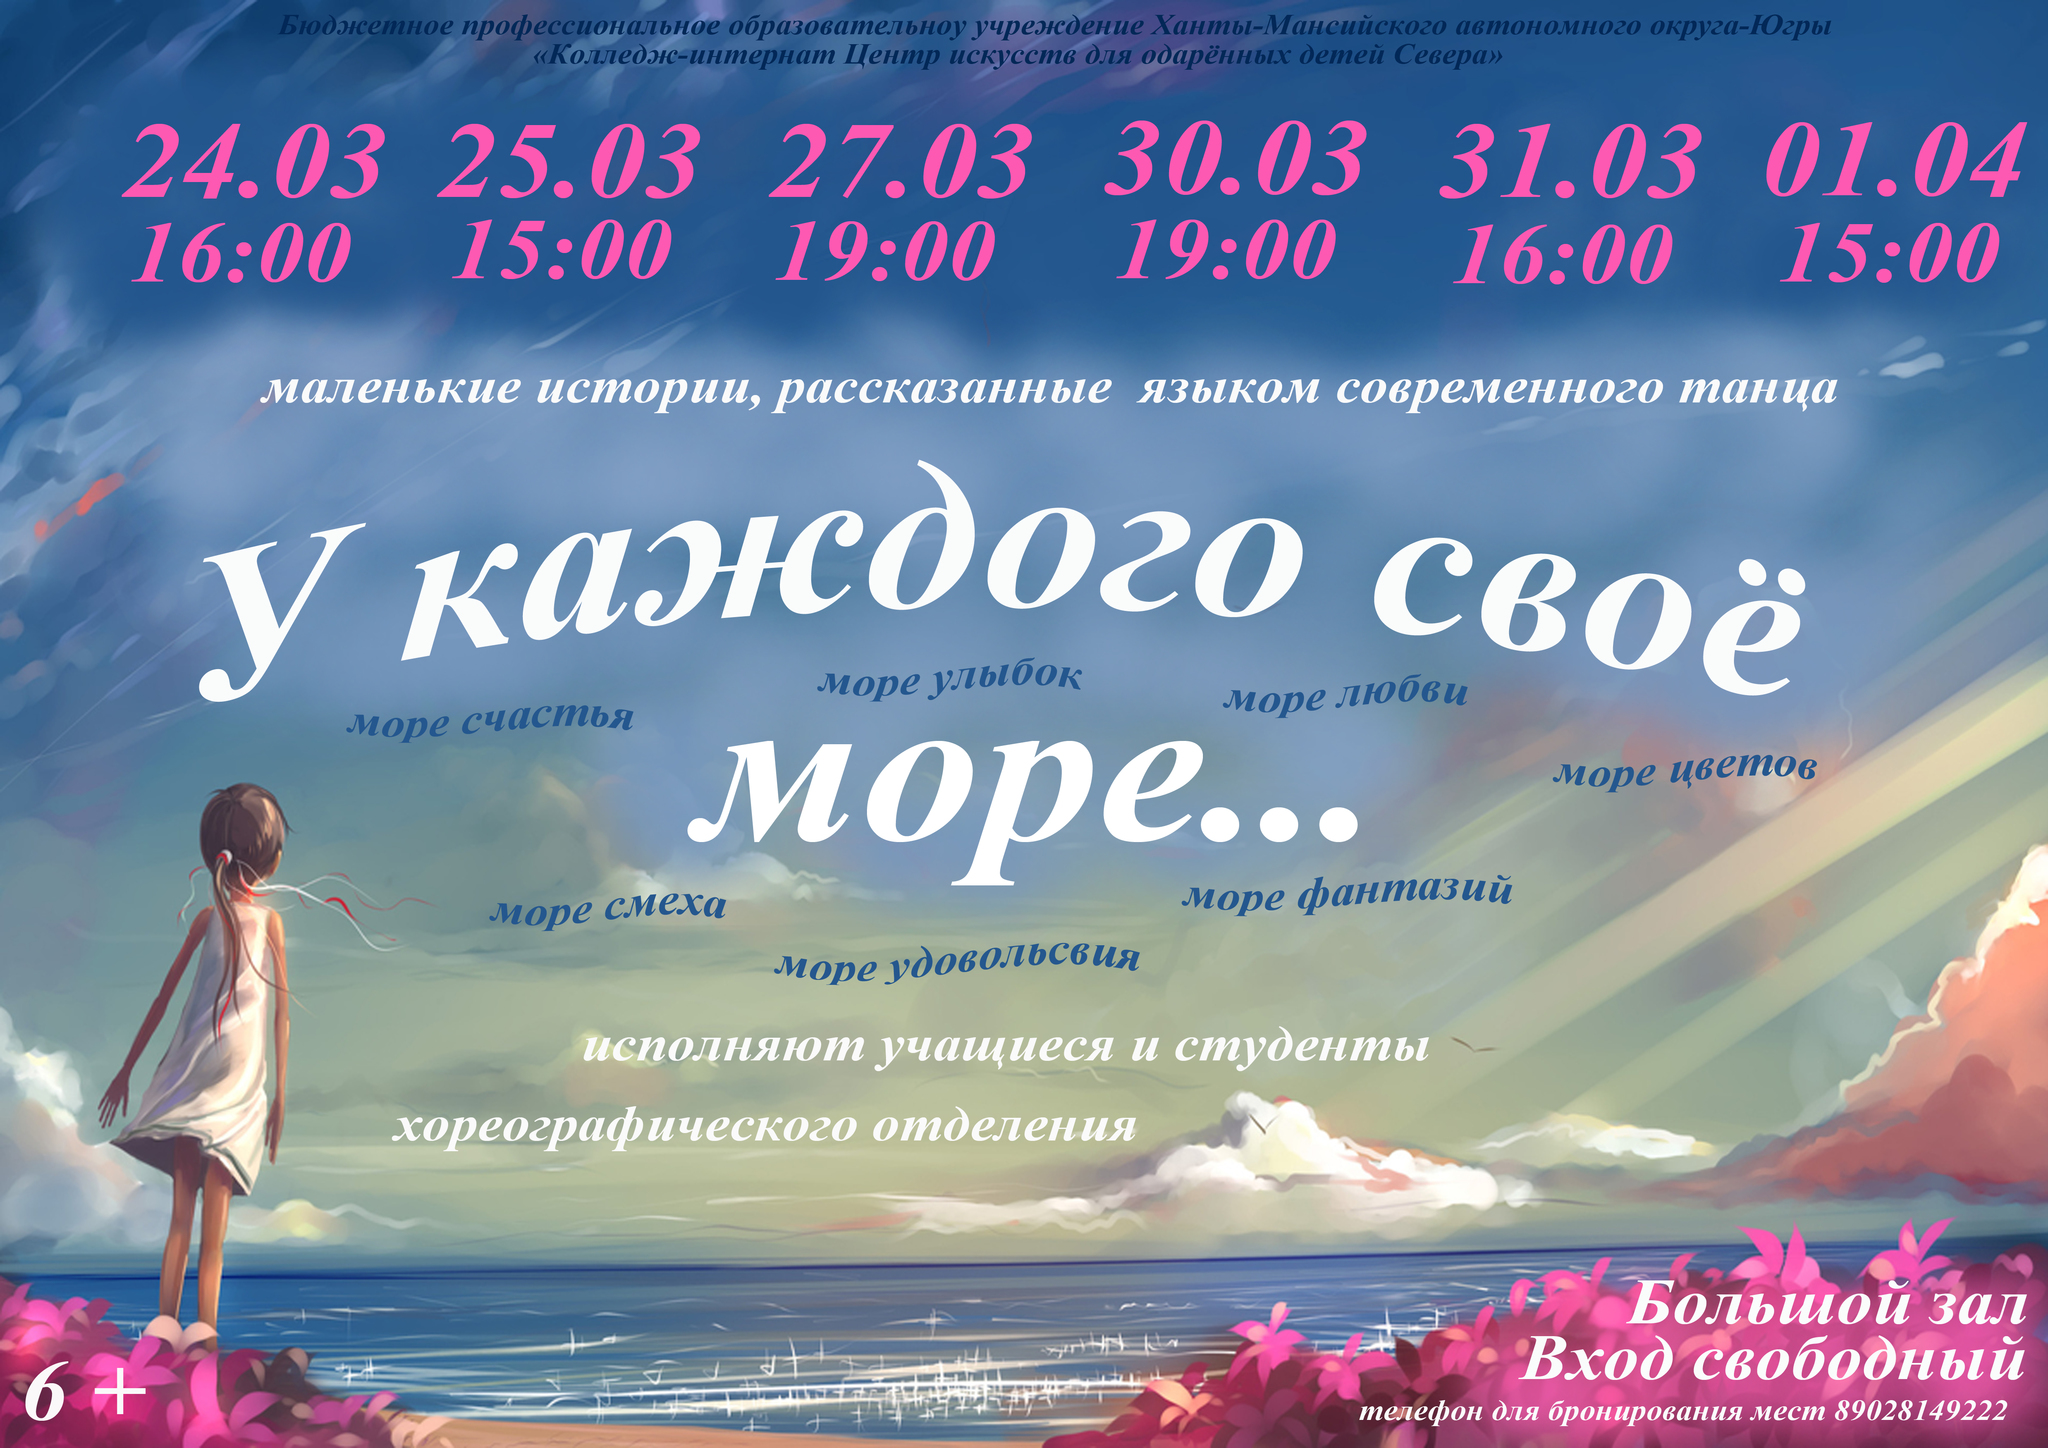 Языком современного танца расскажут о море студенты Центра искусств Ханты-Мансийска